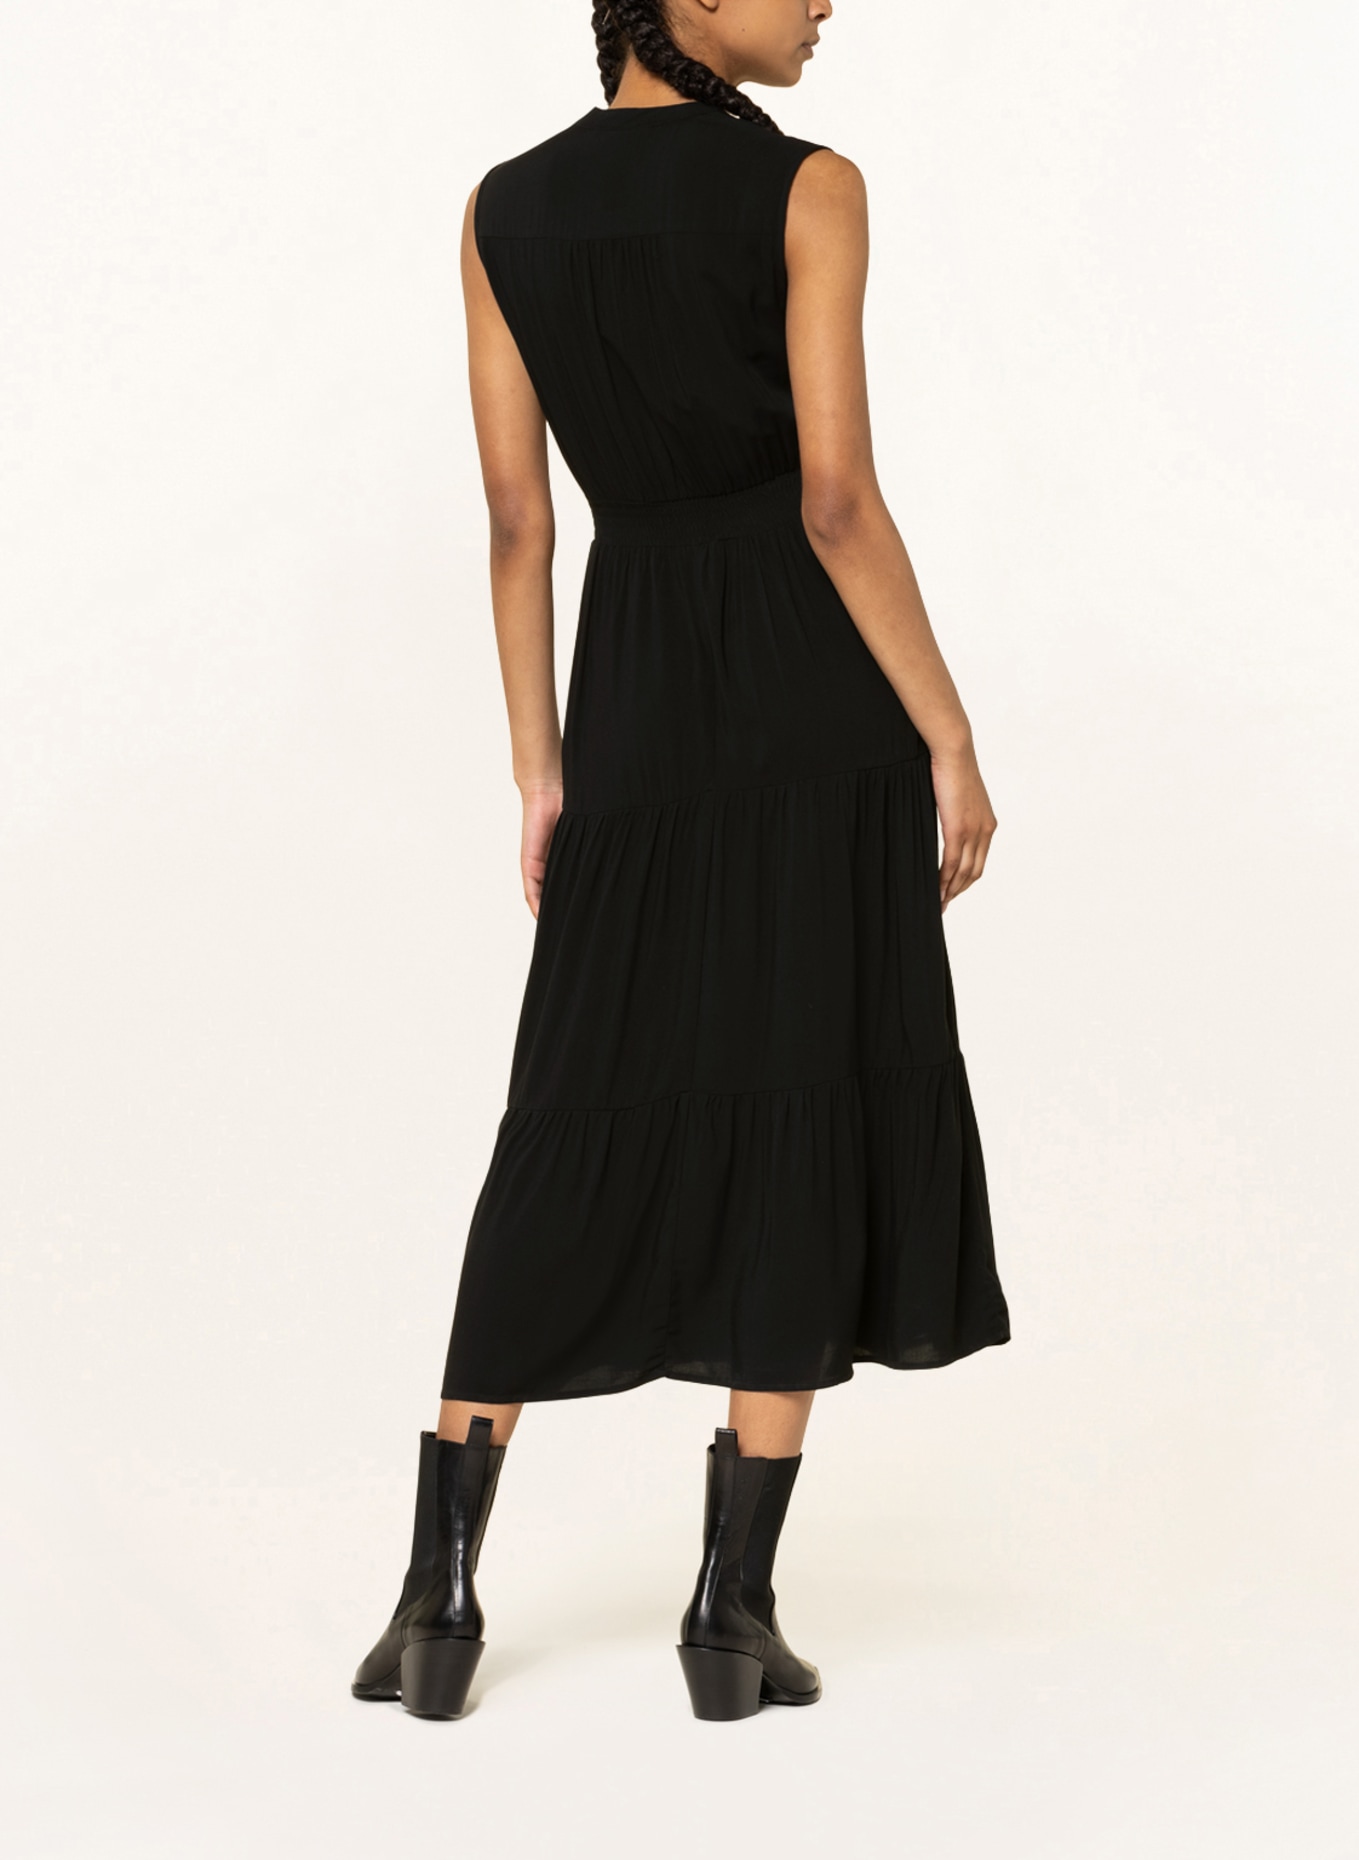 ONLY Dress, Color: BLACK (Image 3)